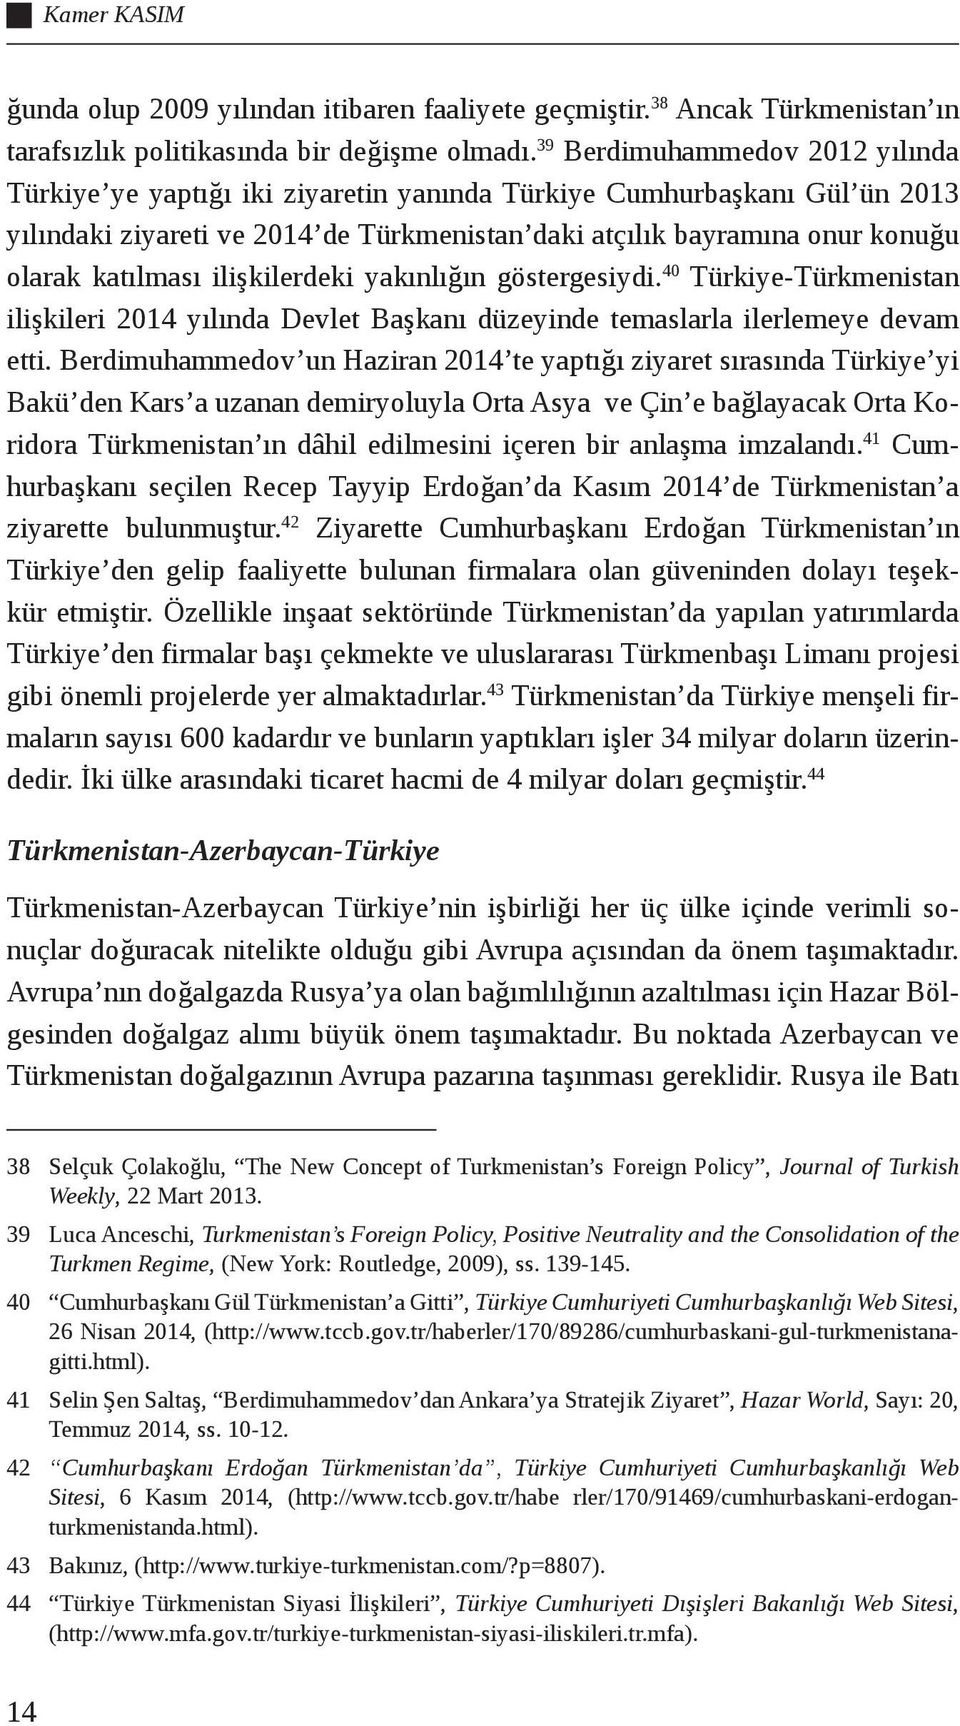 katılması ilişkilerdeki yakınlığın göstergesiydi. 40 Türkiye-Türkmenistan ilişkileri 2014 yılında Devlet Başkanı düzeyinde temaslarla ilerlemeye devam etti.